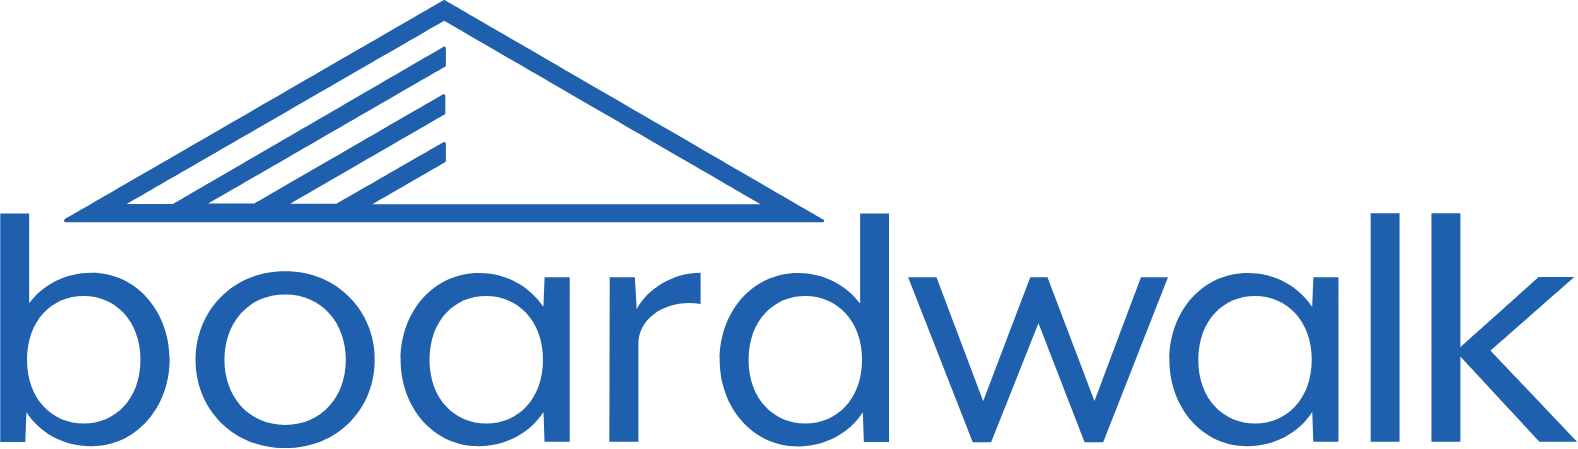 Boardwalk Real Estate Investment Trust logo large (transparent PNG)